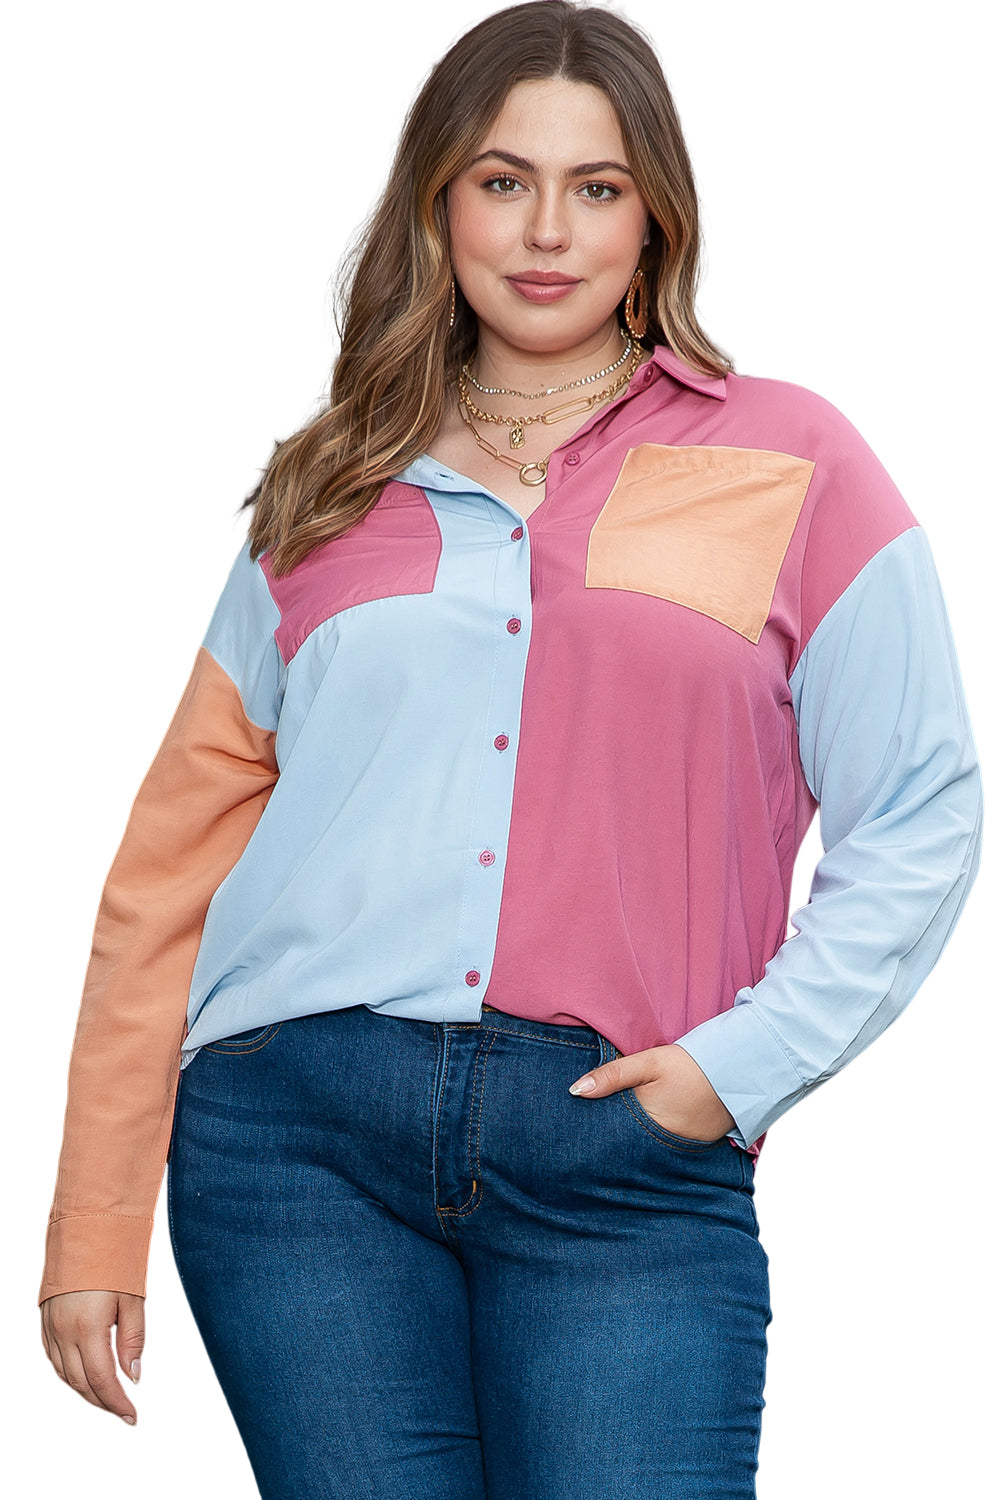 Majica velike velikosti z naprsnimi žepi v roza barvah